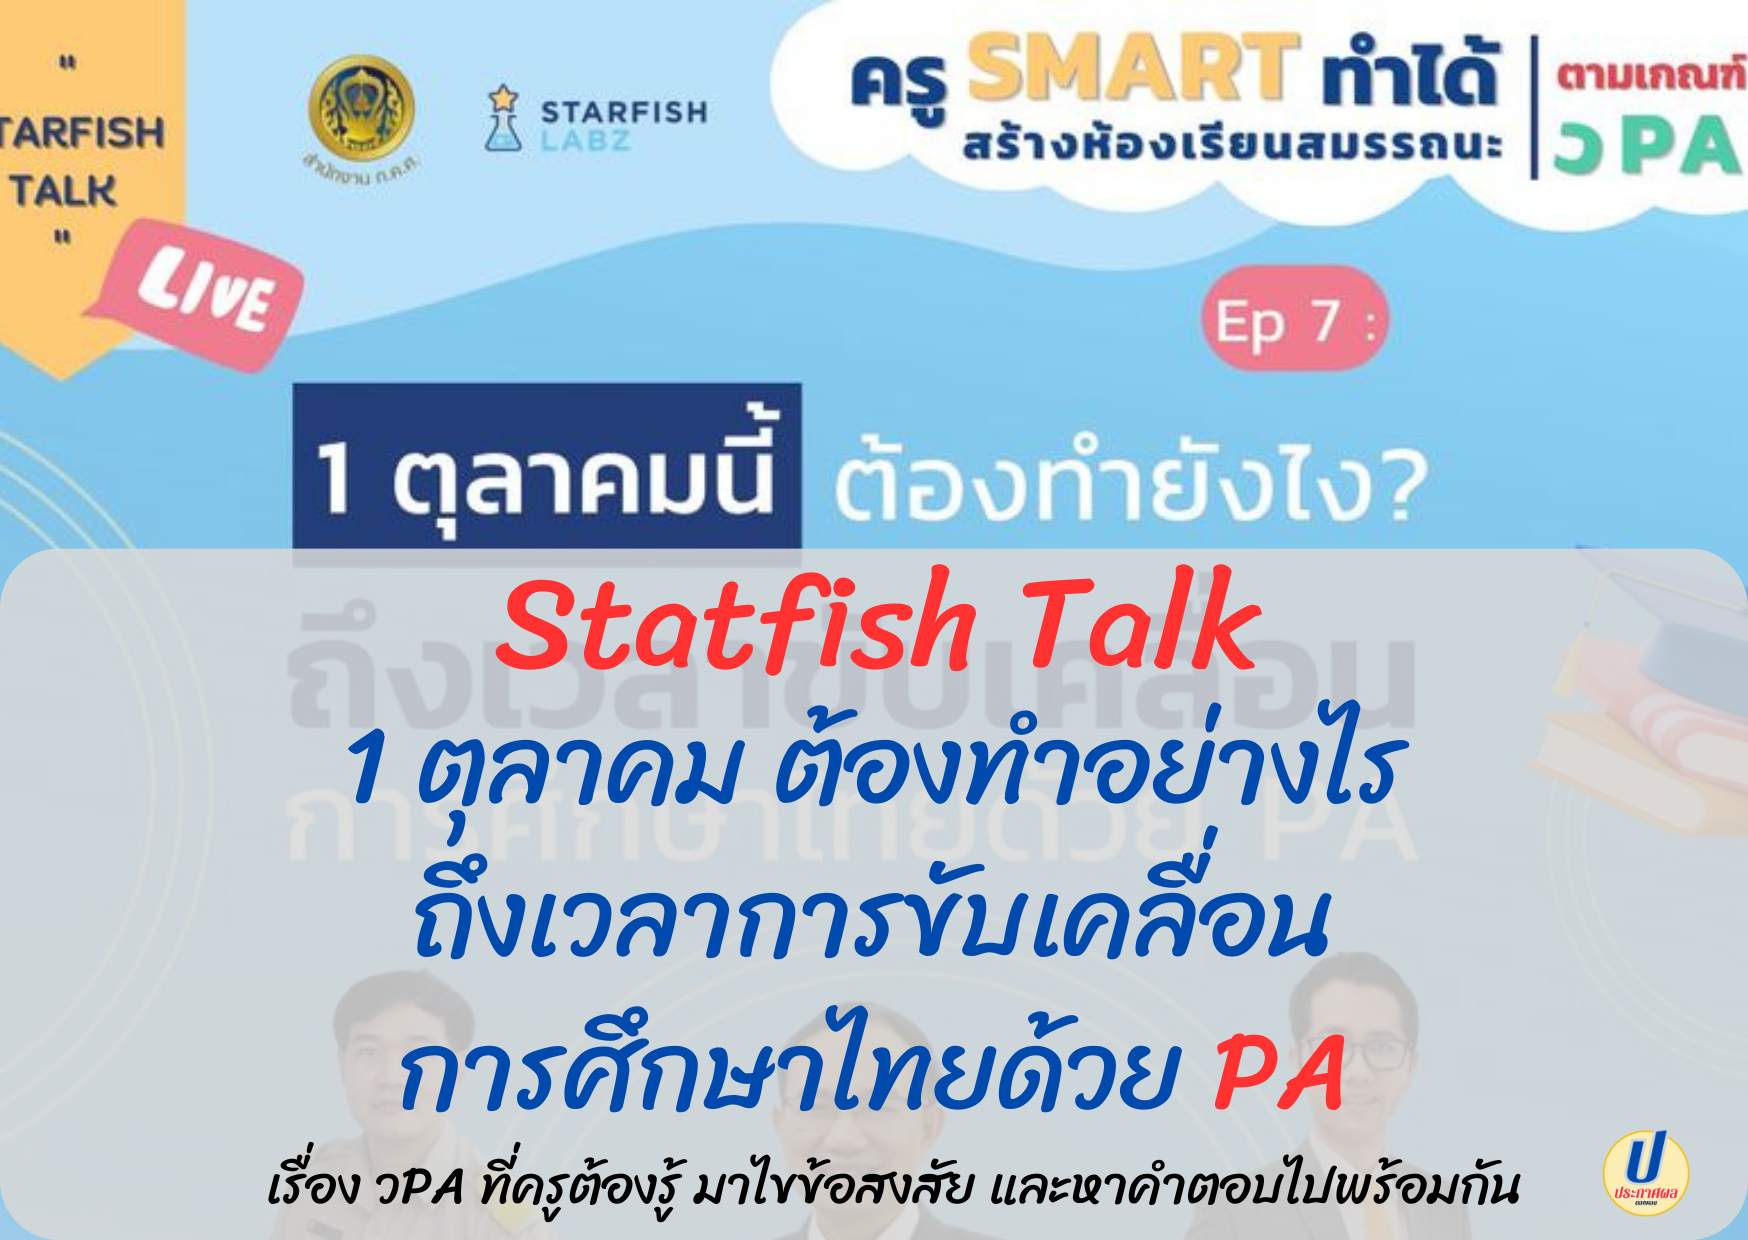 Statfish Talk วันพฤหัสบดีที่ 25 สิงหาคม 2565 กับหัวข้อ 1 ตุลาคมนี้ต้องทำยังไง? ถึงเวลาขับเคลื่อน การศึกษาไทยด้วย PA